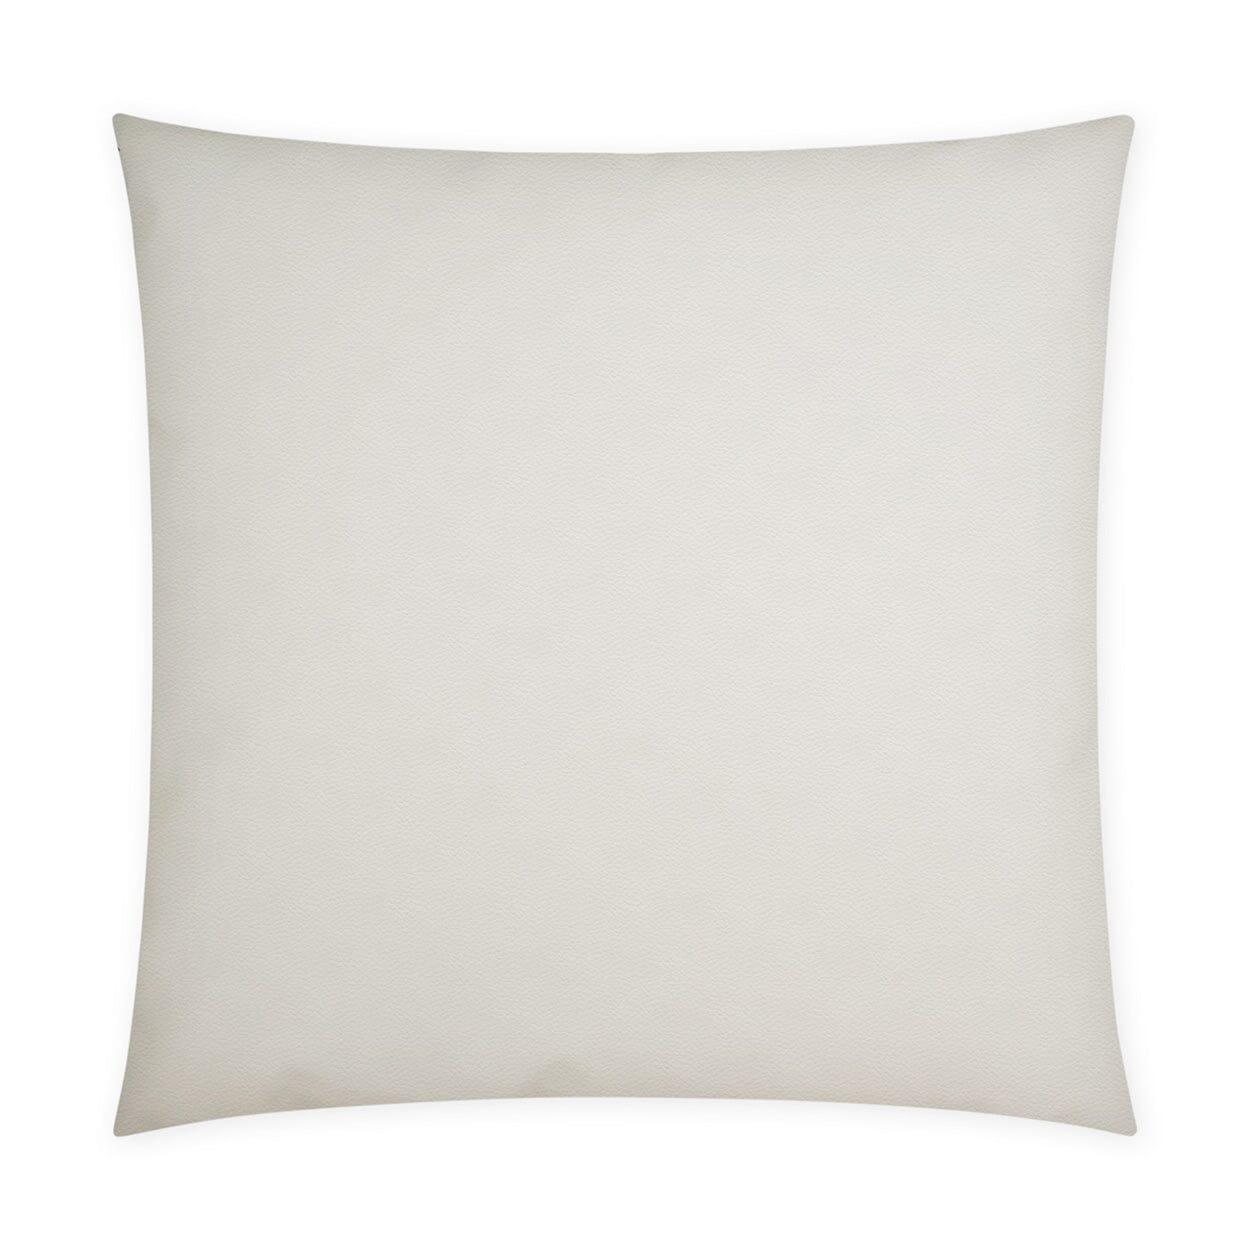 D.V. Kap 12" x 24" Outdoor Lumbar Pillow | Sundance Band Navy Lumbar Pillows D.V Kap Outdoor